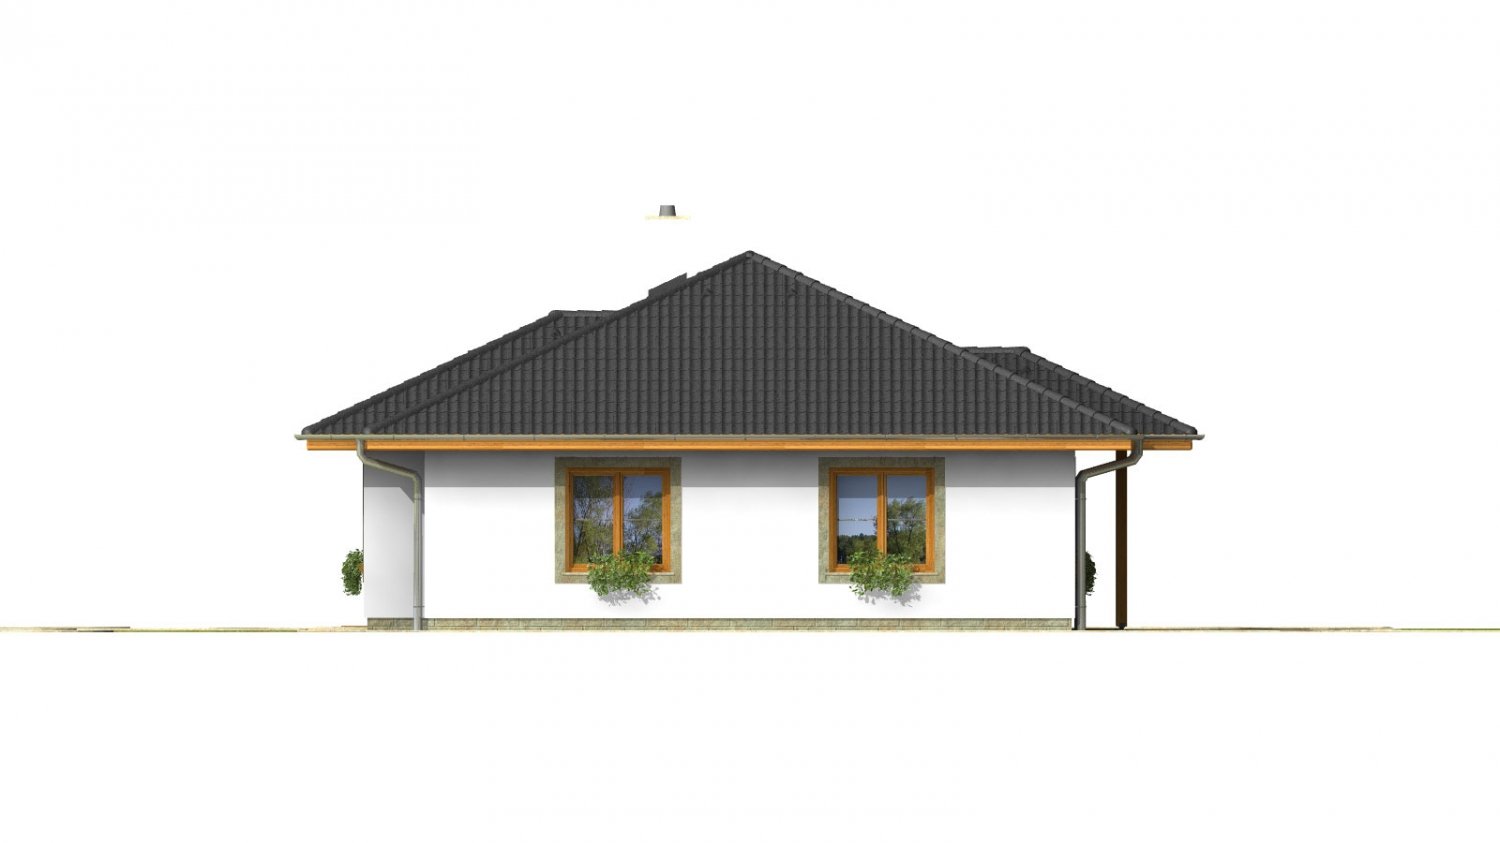 Zrkadlový pohľad 4. - Klasický projekt přízemního rodinného domu s valbovými střechami, vhodný i na užší pozemek.